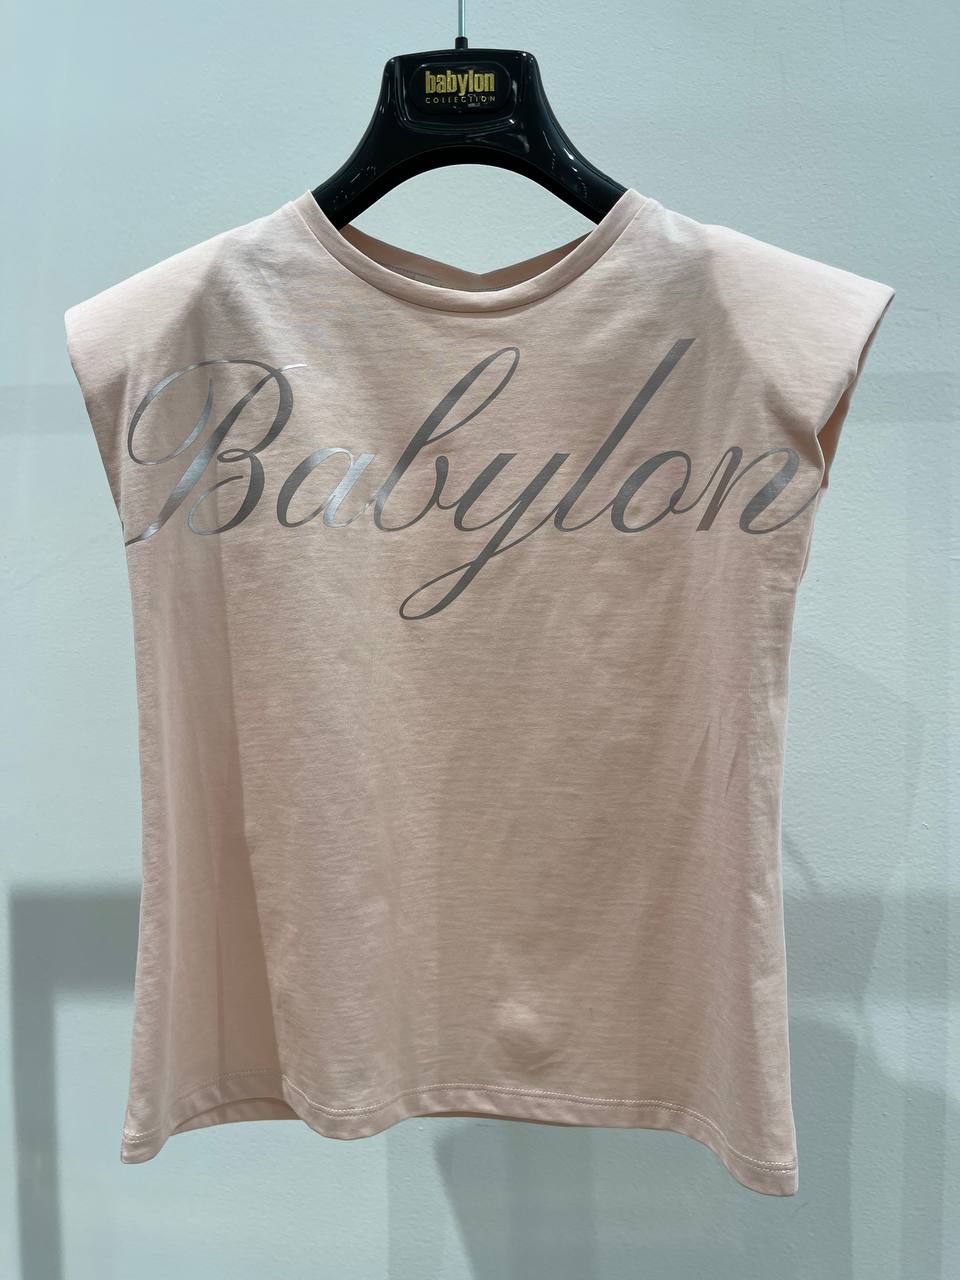 Итальянская одежда, бренд Babylon, арт. 73262358